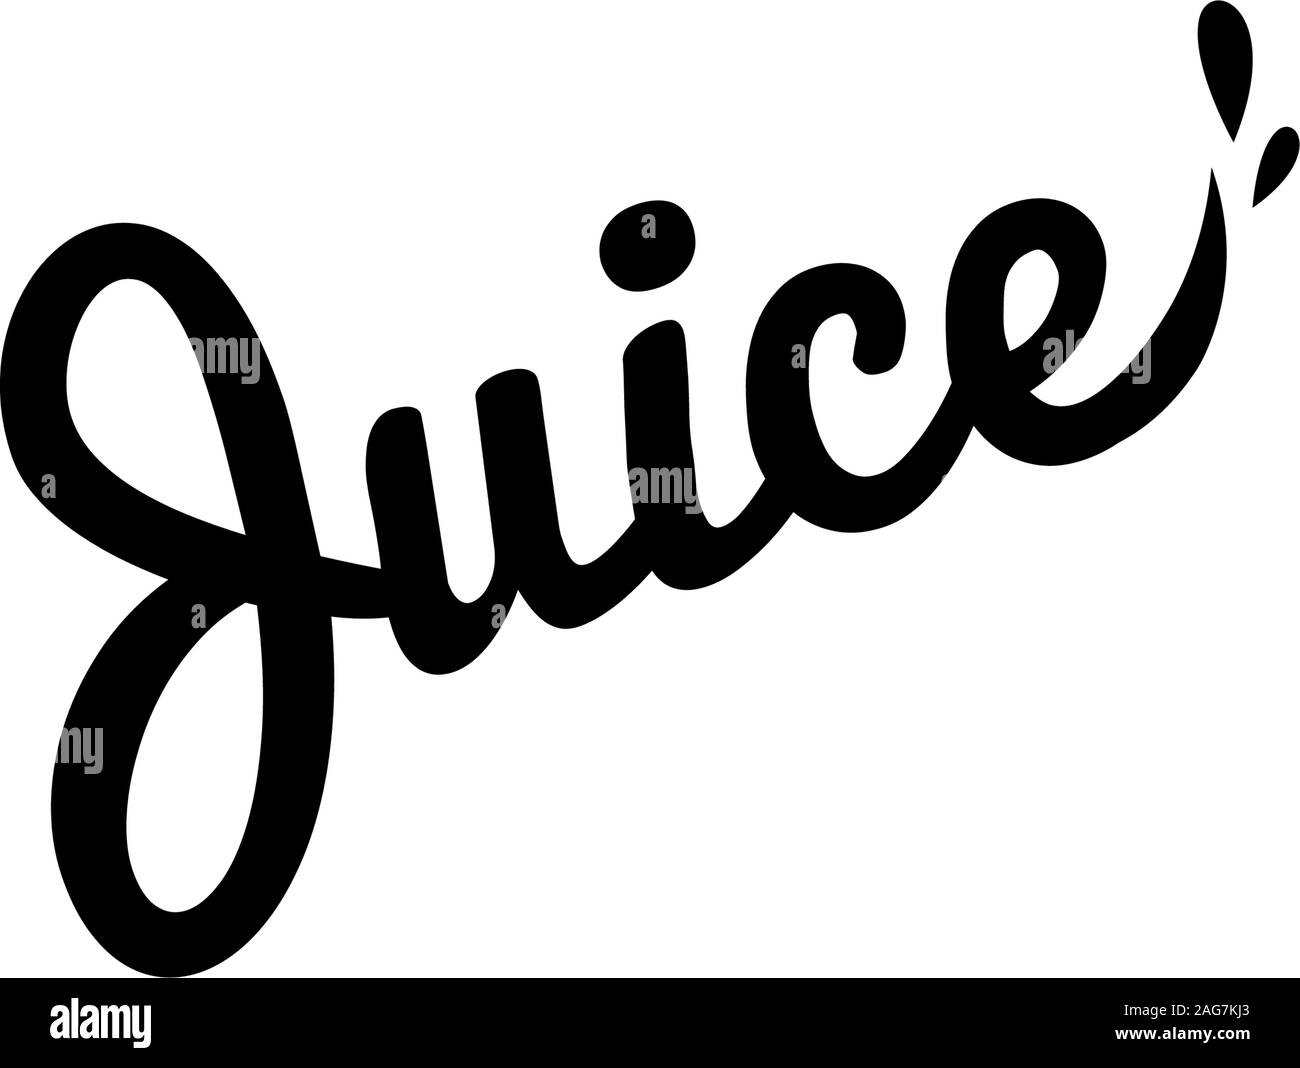 Isolierte vektor Logo. Frischer Saft drop-Schriftzug. Eco drink Logo. Organisches Produkt Logo. Einfache Textdateien. Schwarze Schrift Logo. Stock Vektor